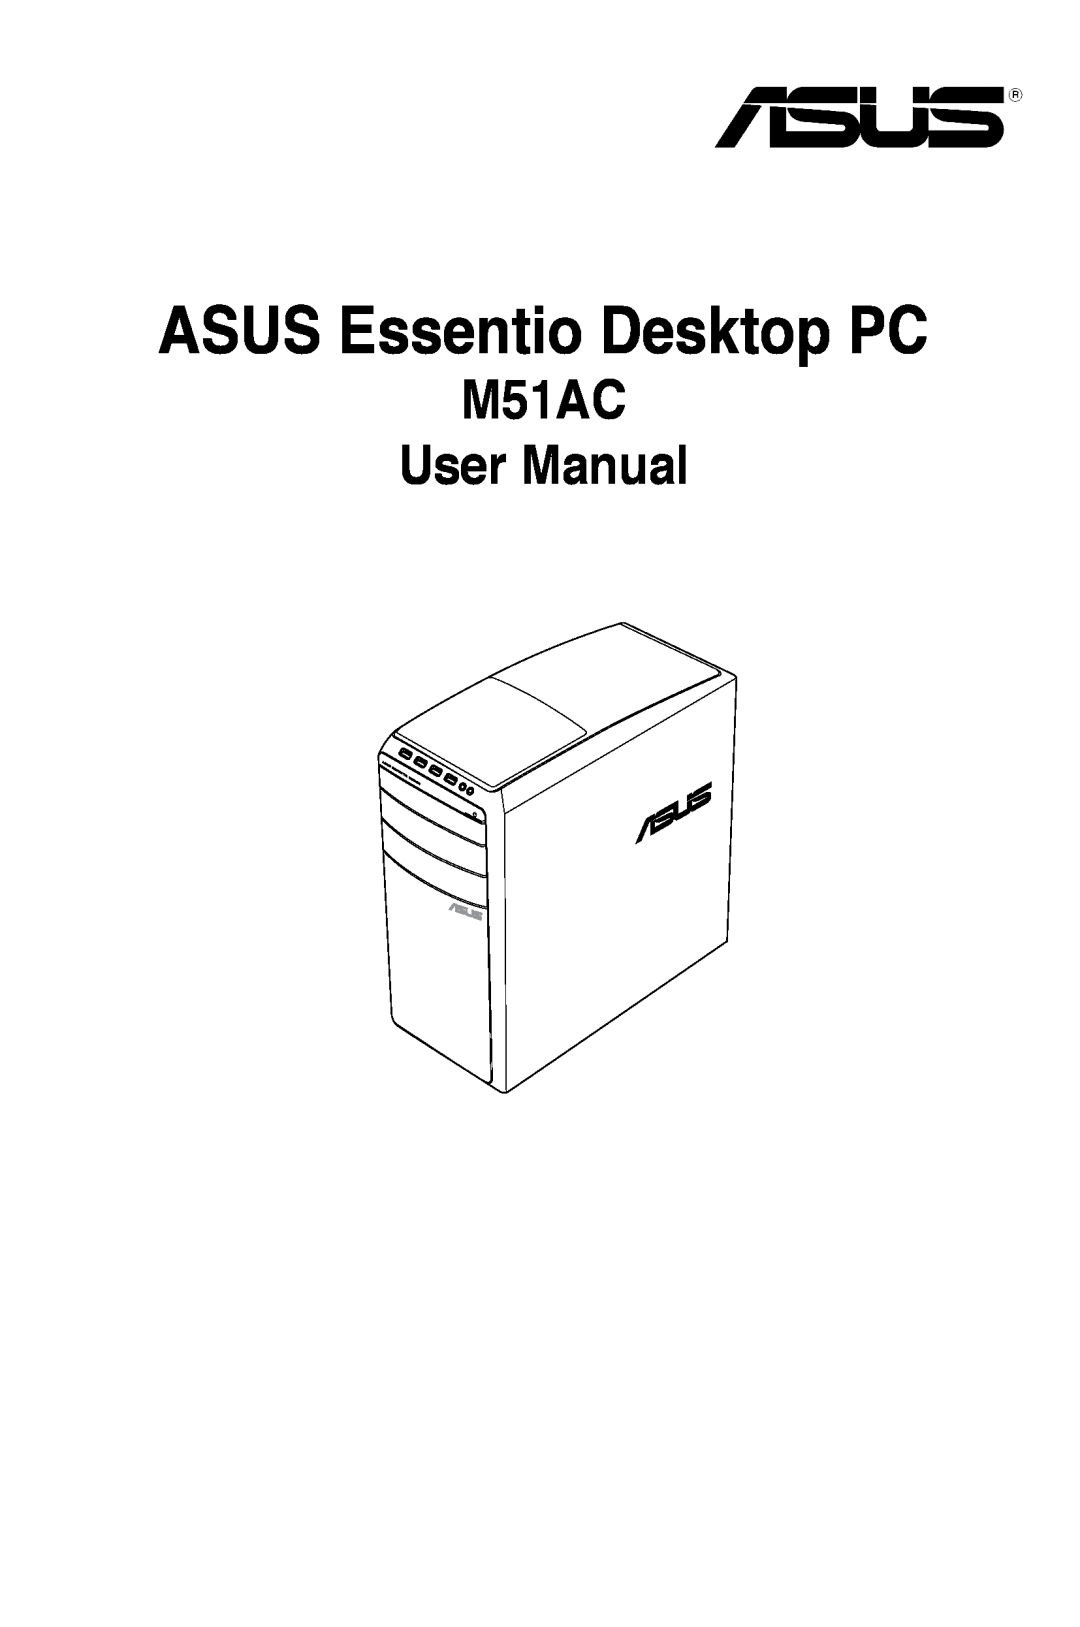 Asus M51ACUS002S, M51ACUS006S, M51BCUS005S, M51ACUS018S, M51ACUS005S user manual ASUS Essentio Desktop PC, M51AC User Manual 